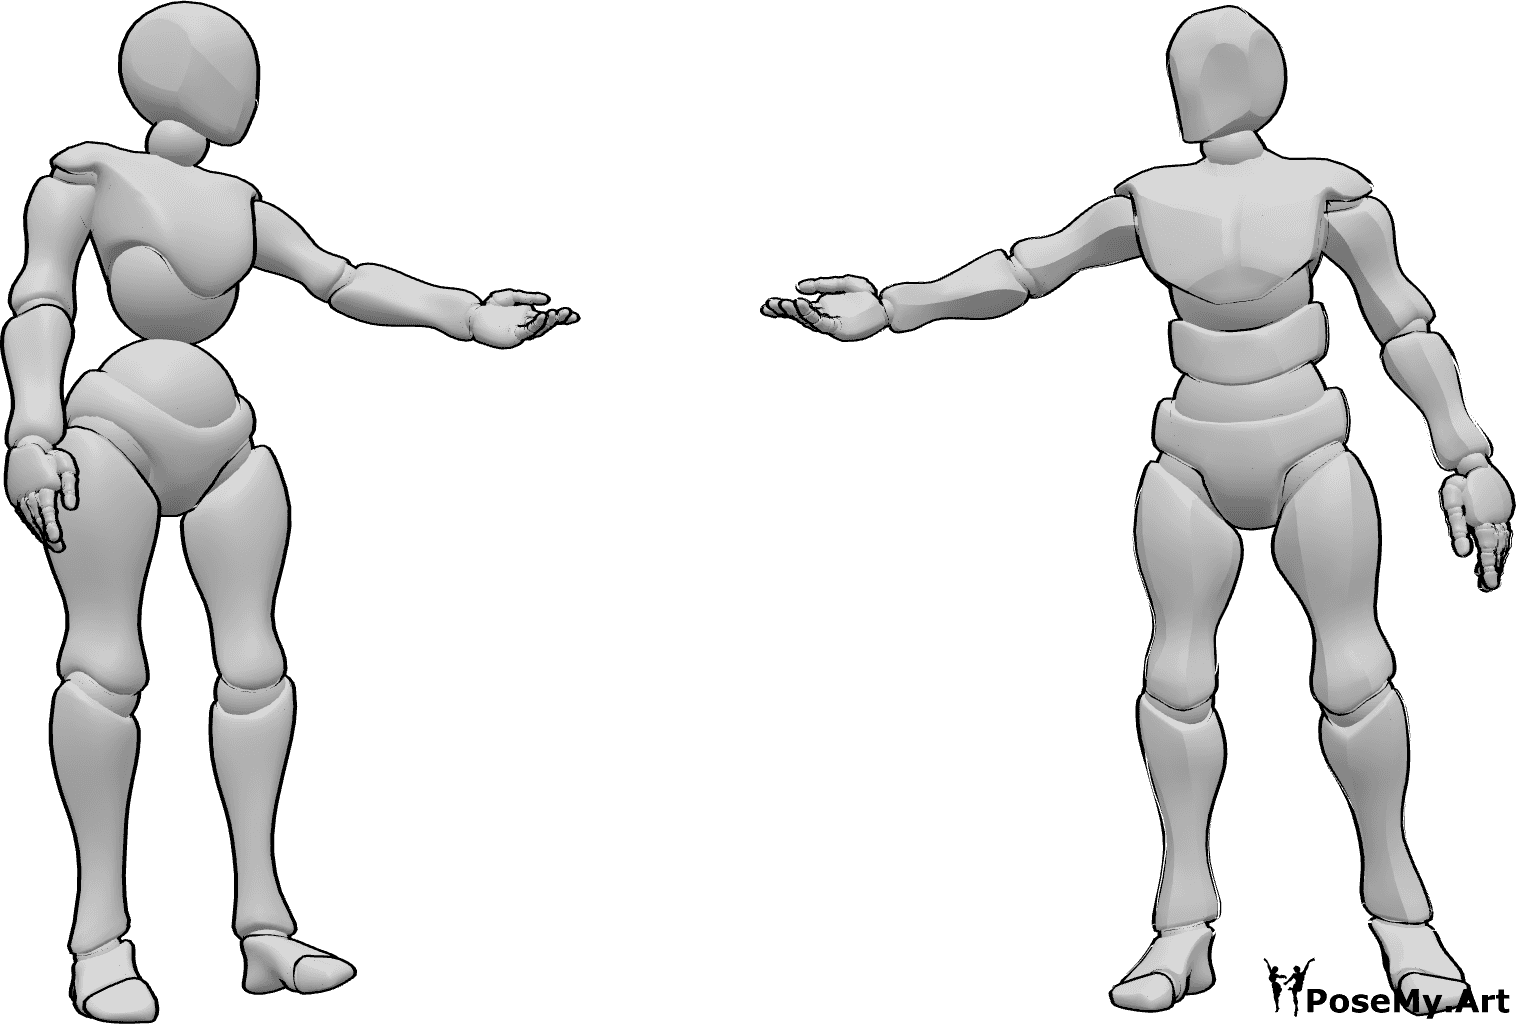 Référence des poses- Femme homme pose tendue - Une femme et un homme sont debout, se regardent et se tendent la main.